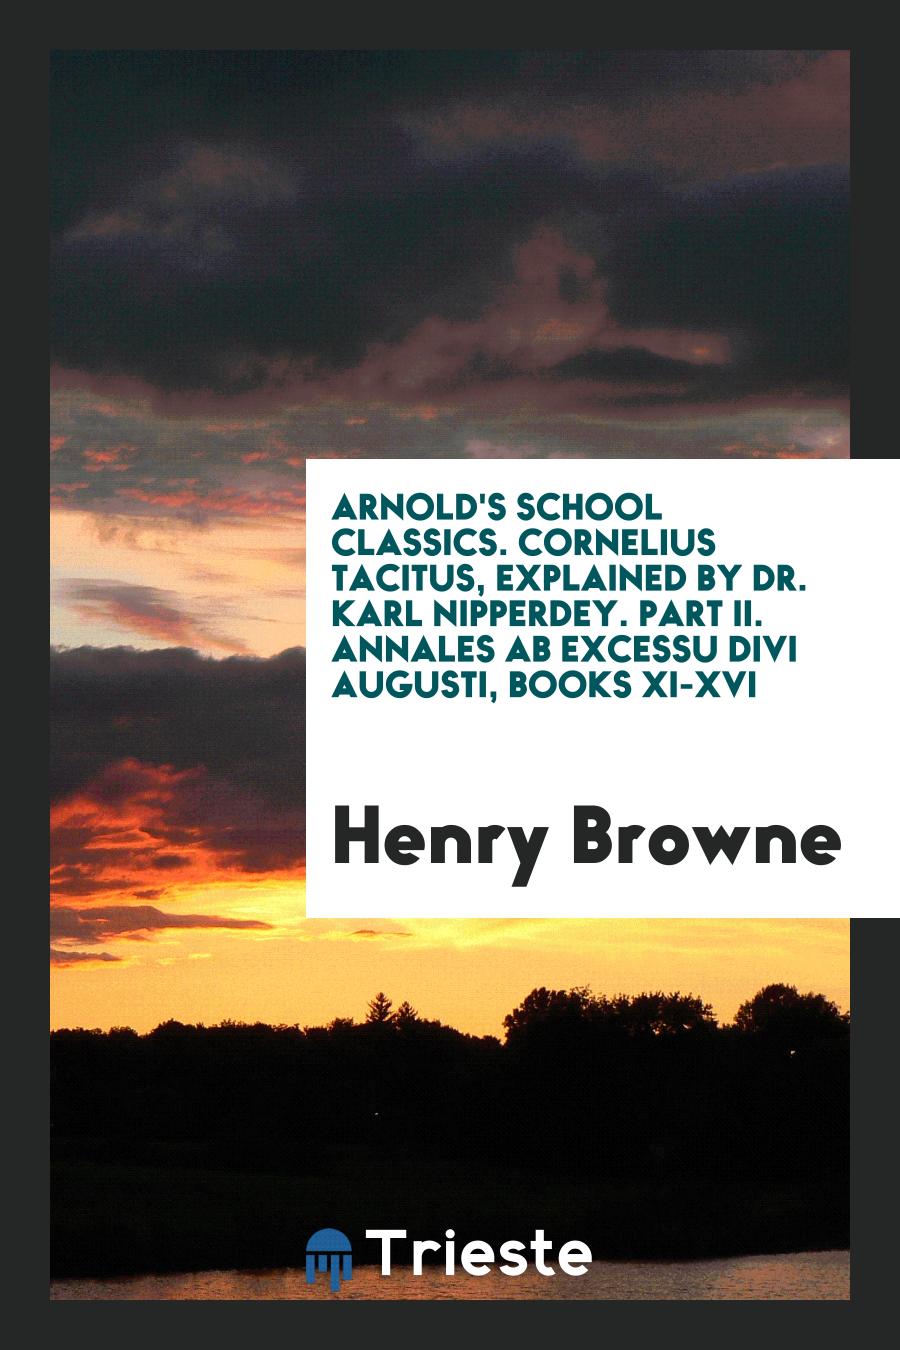 Arnold's School Classics. Cornelius Tacitus, Explained by Dr. Karl Nipperdey. Part II. Annales AB Excessu Divi Augusti, Books XI-XVI